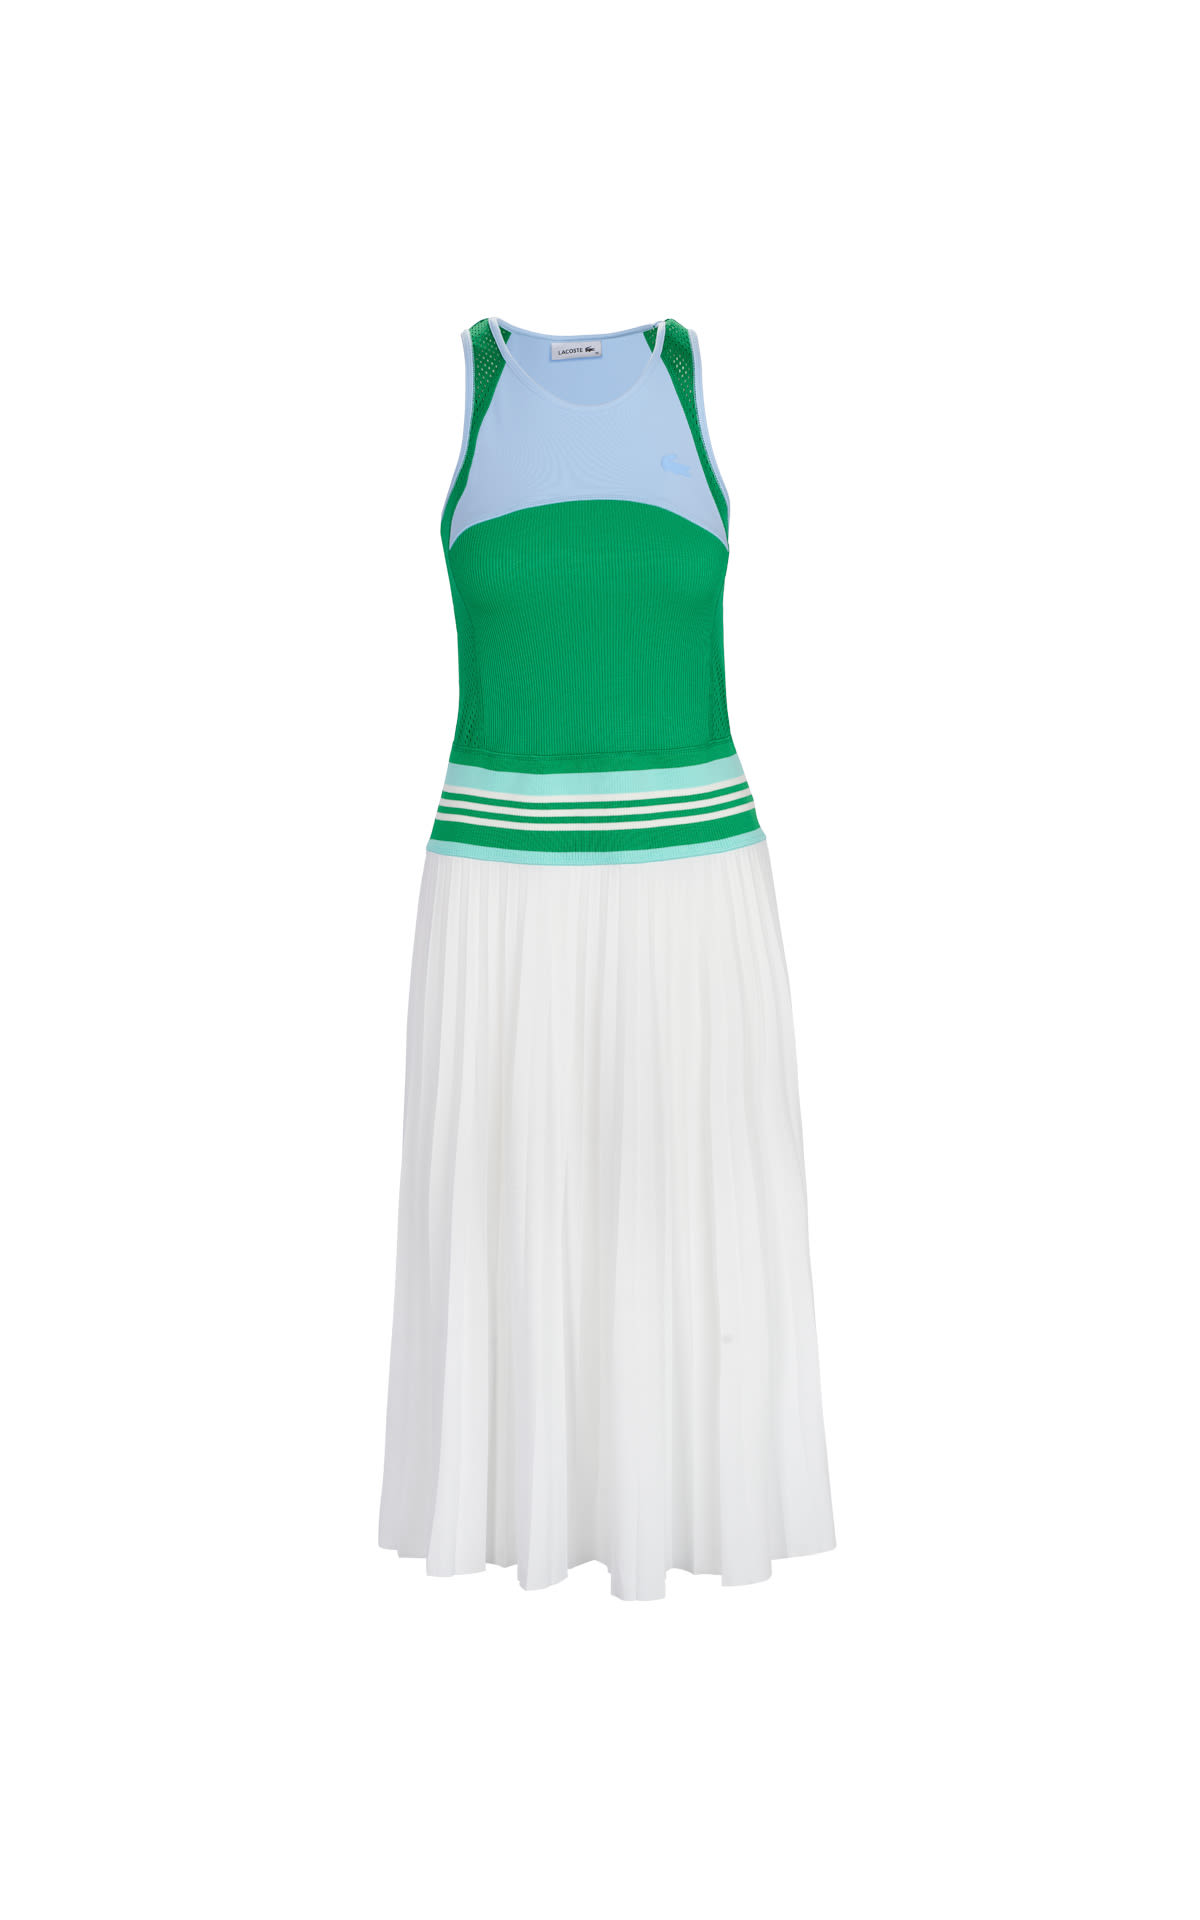 Vestido de tenis verde y blanco Lacoste